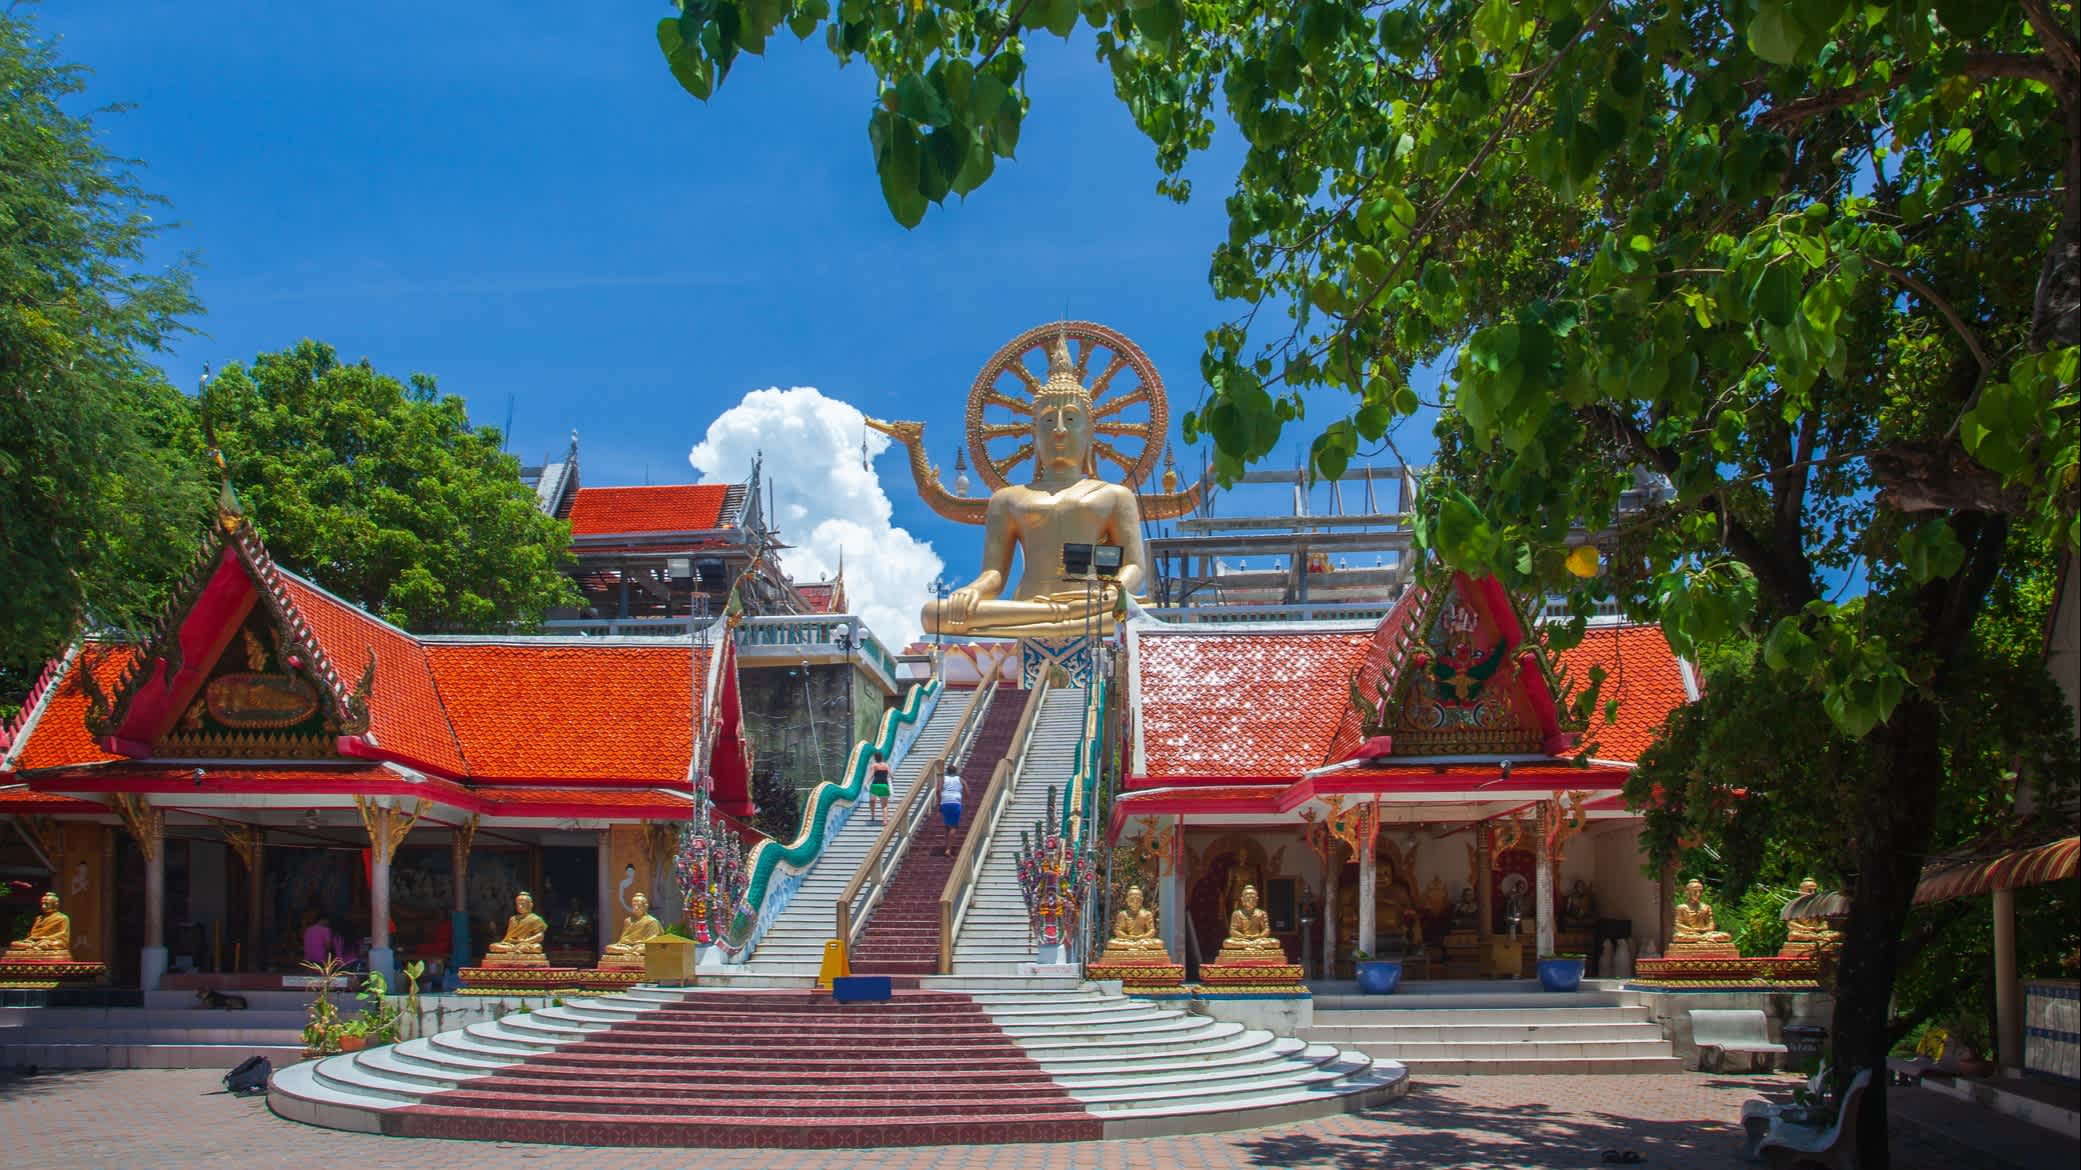 Ansicht der Tempelkomplex Wat Phra Yai, Koh Samui, Thailand

